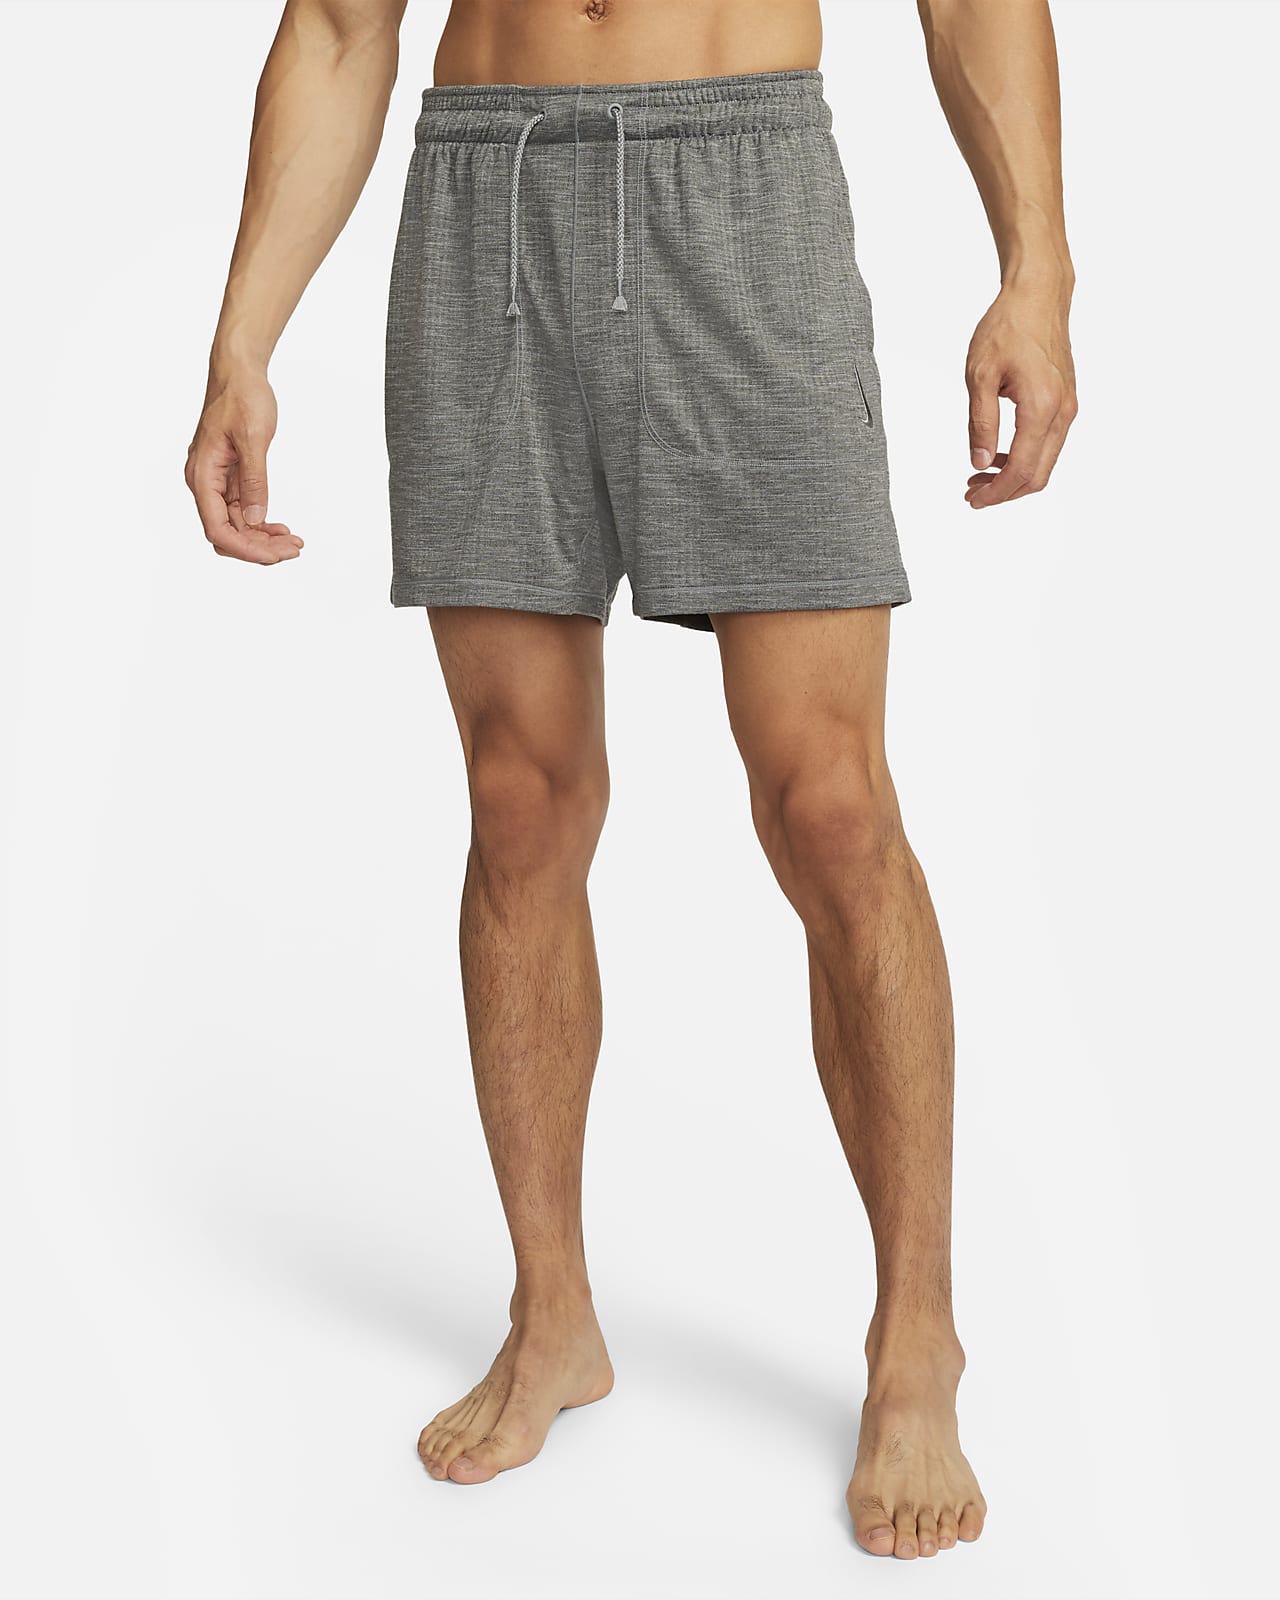 Nike Yoga Men's Dri-FIT 5" Unlined Shorts